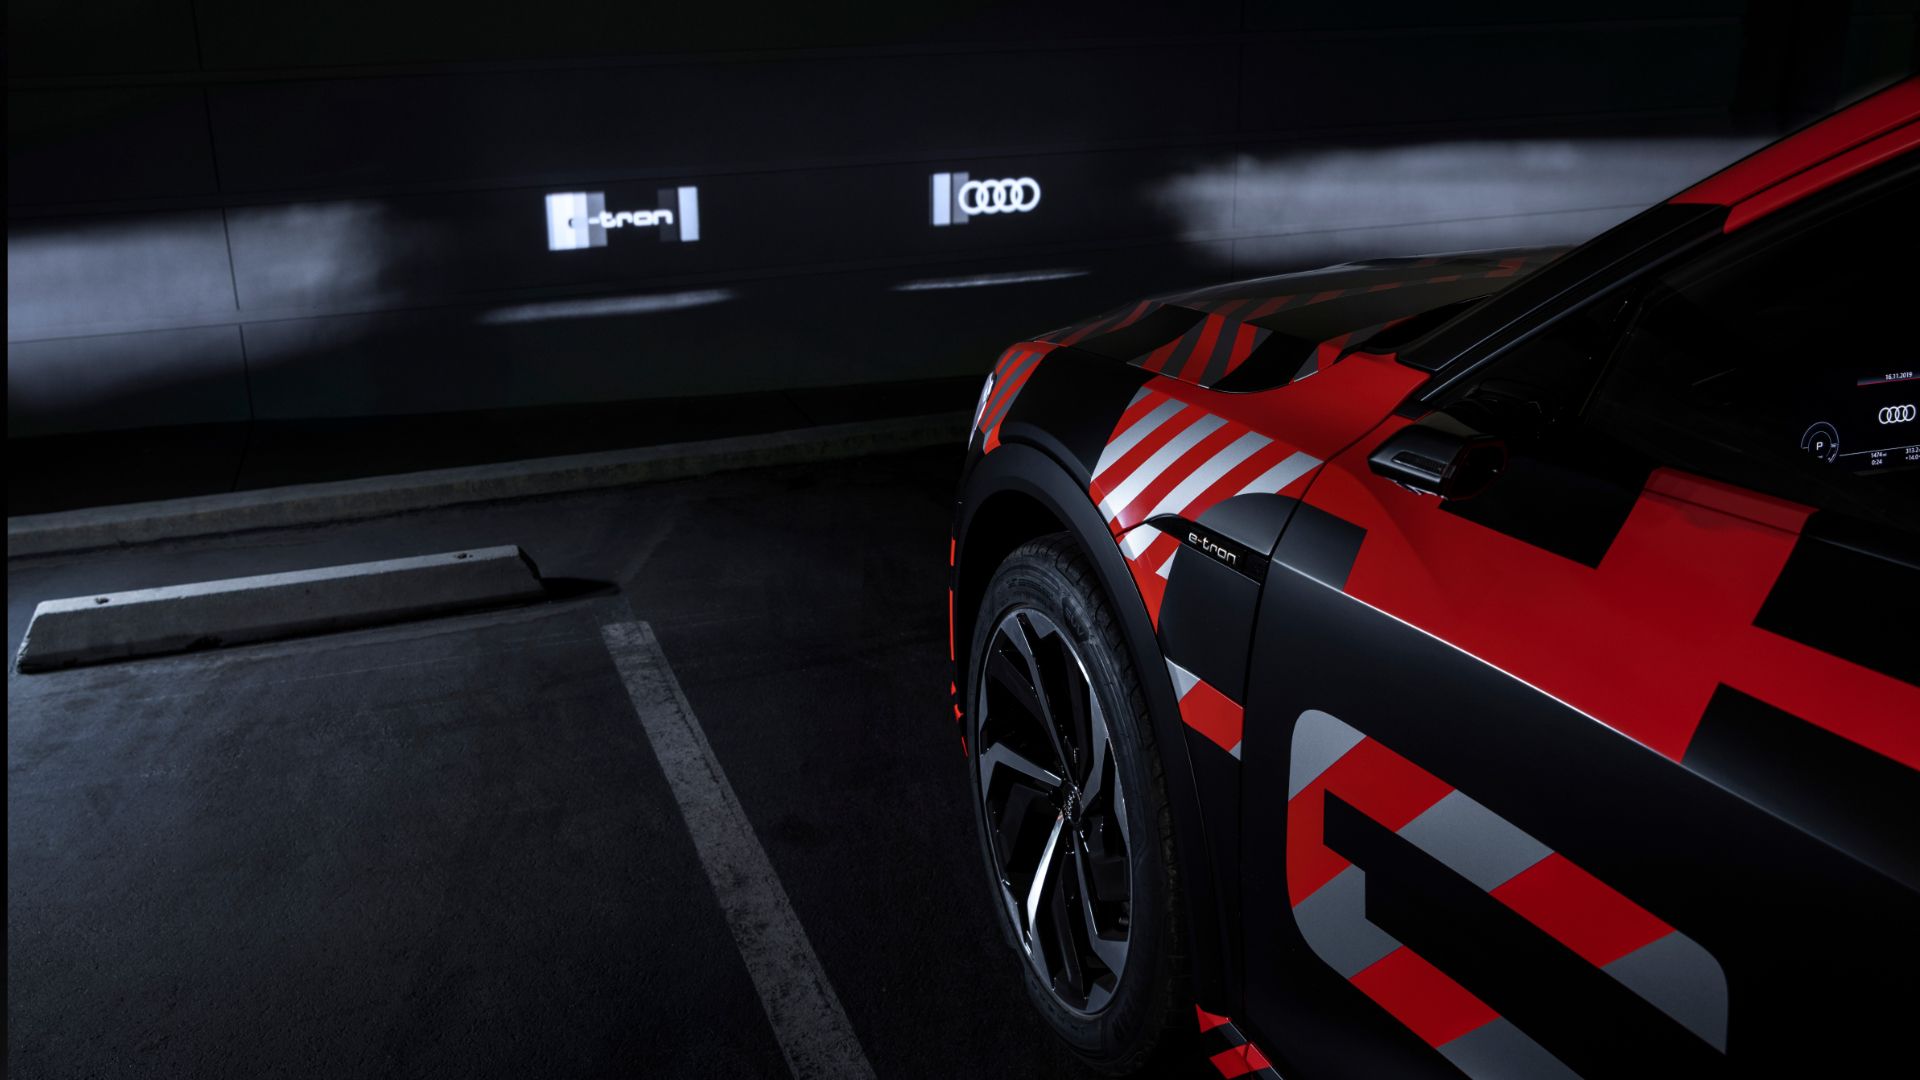 Cooler Effekt: Beim Starten und Abstellen des Autos projizieren die digitalen Matrix LED-Scheinwerfer dynamische Animationen an die Garagenwand.